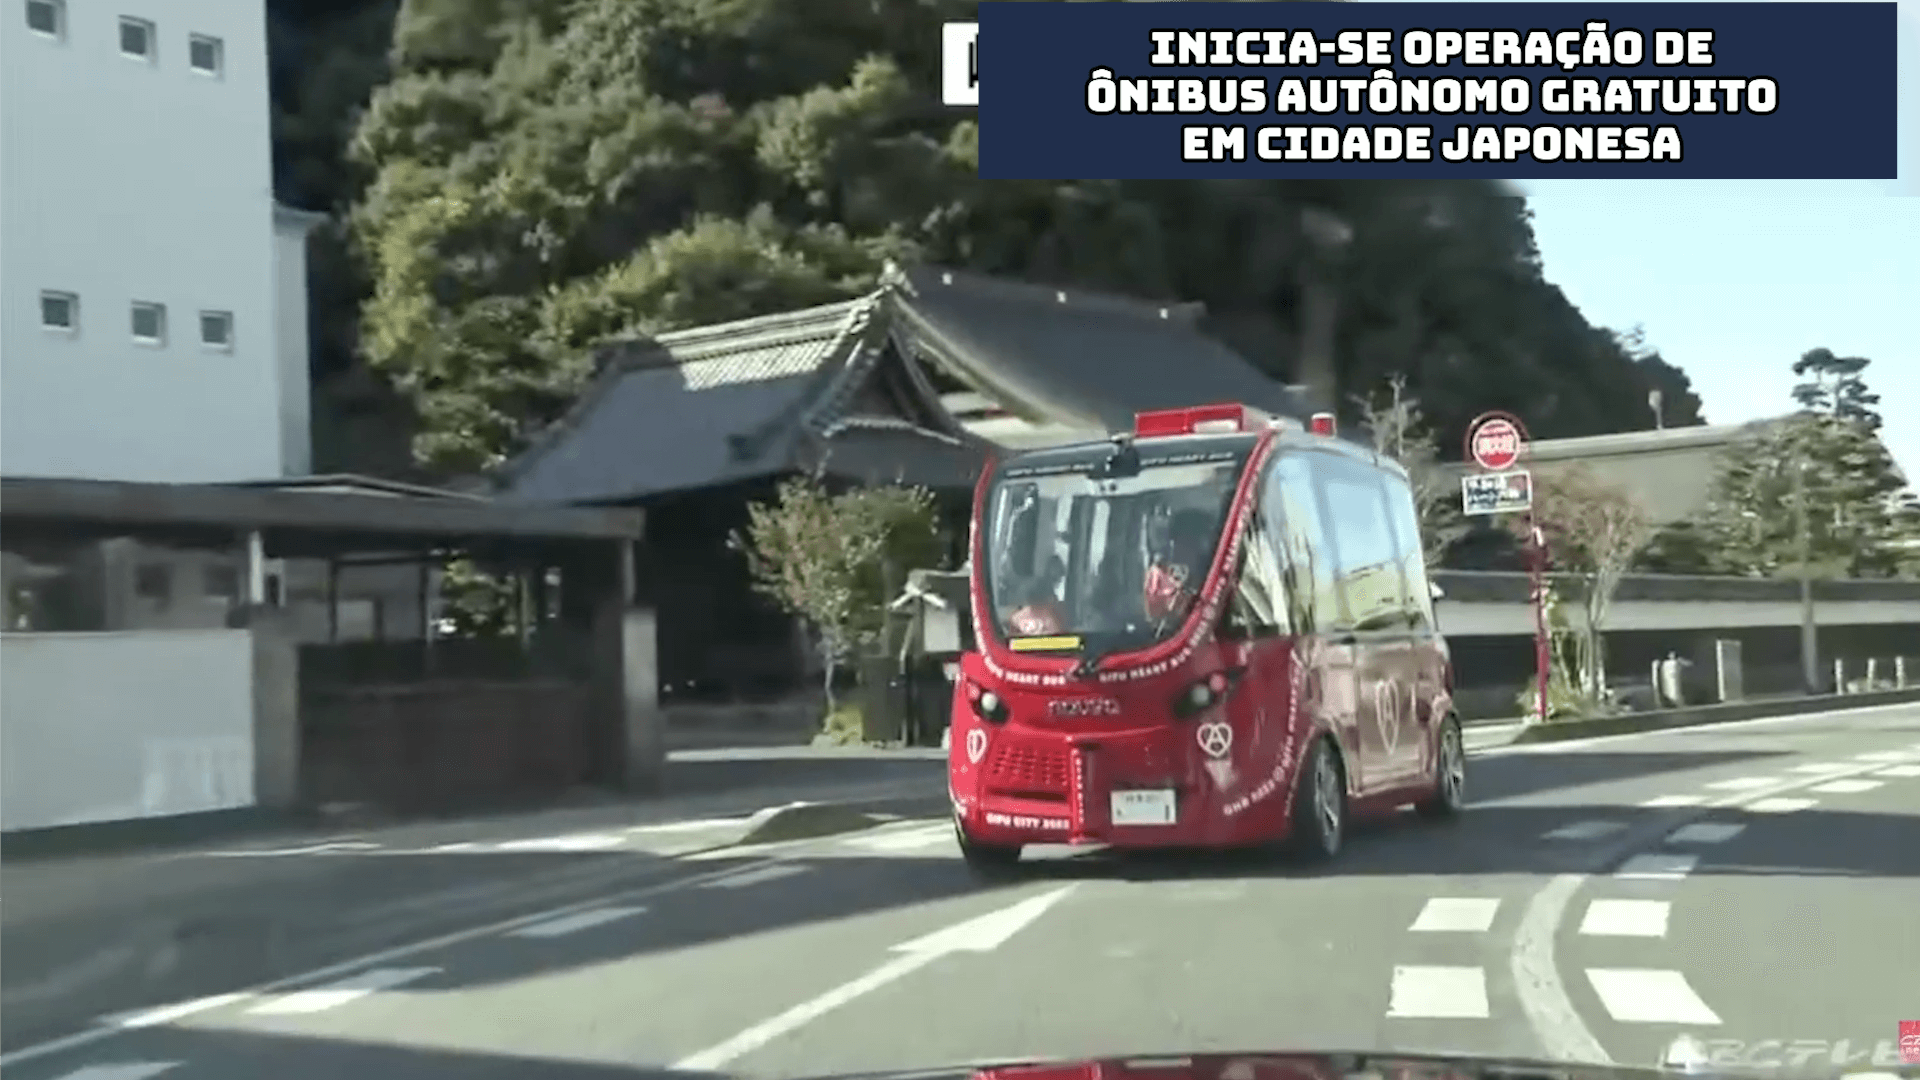 Inicia-se operação de ônibus autônomo gratuito em cidade japonesa 